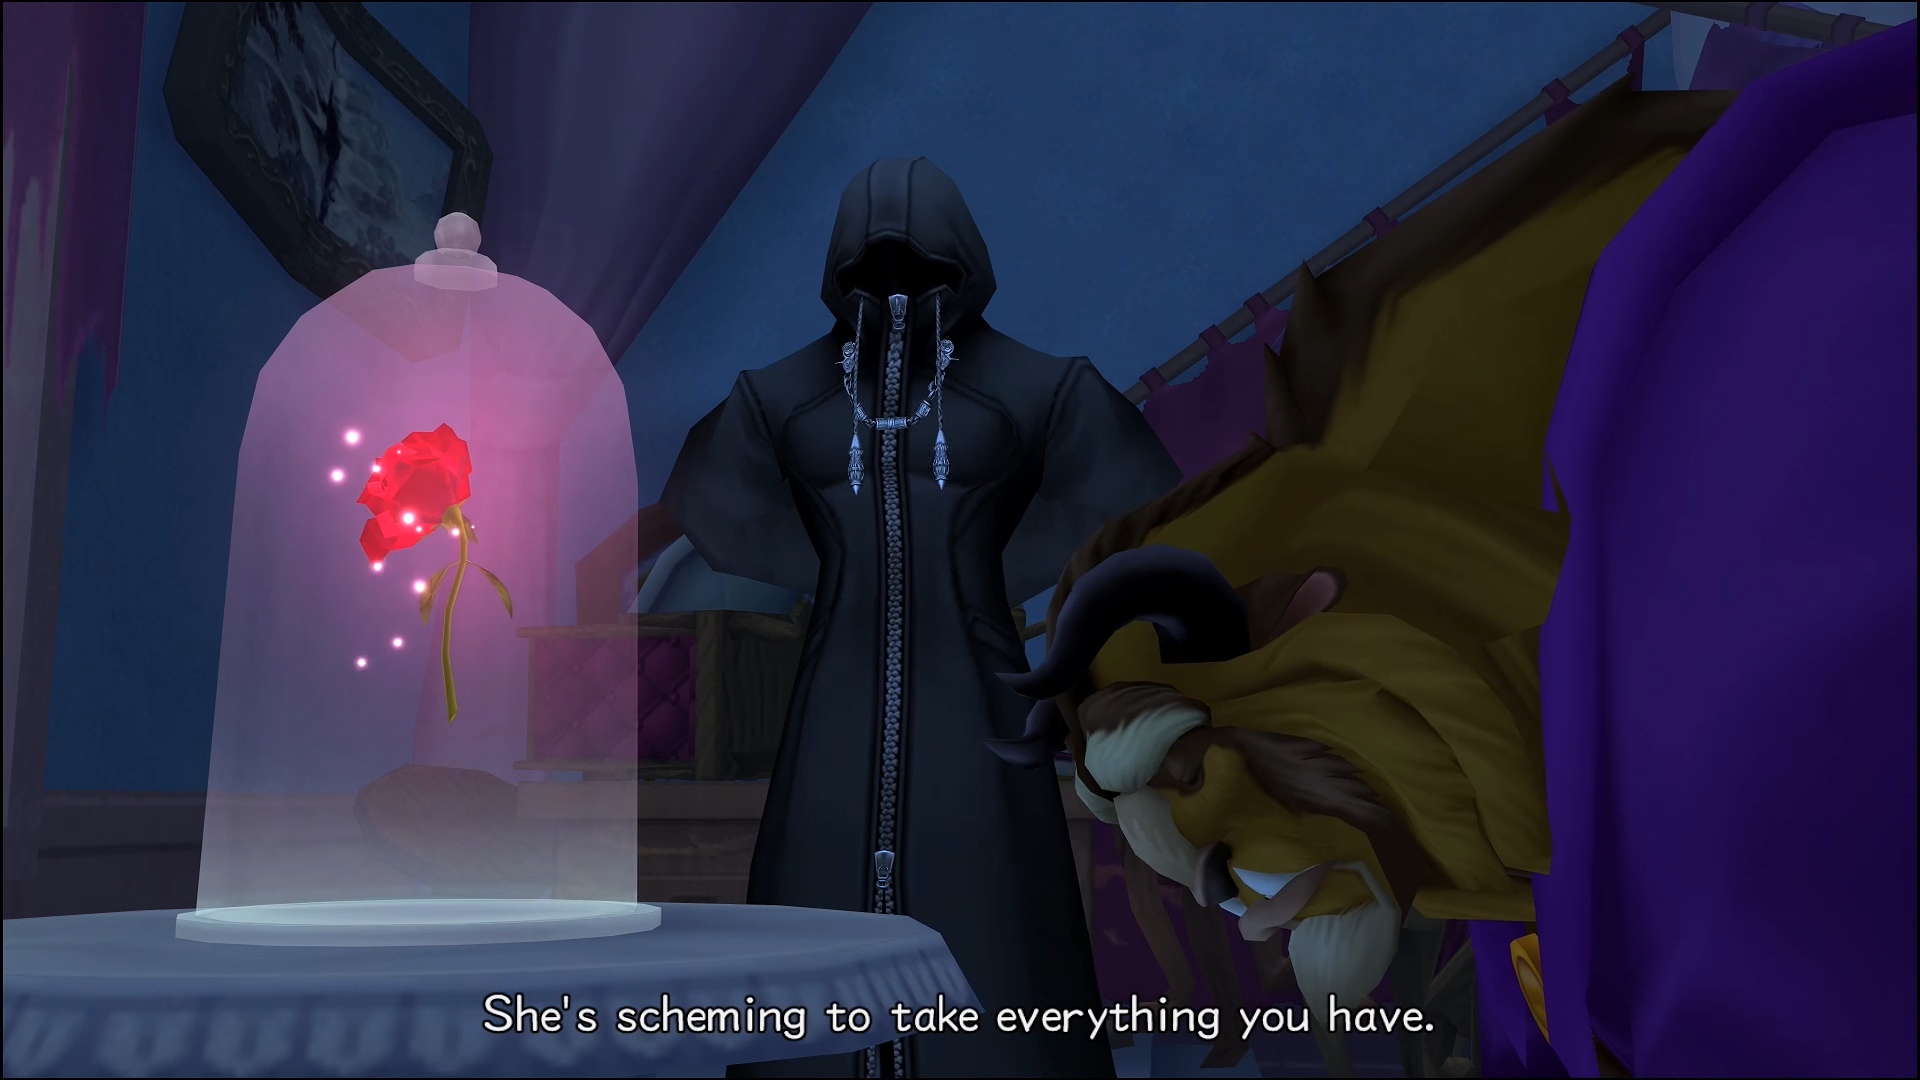 "Kingdom Hearts II". 2007. Square Enix. Disney. Xaldin tries to manipulate Beast.